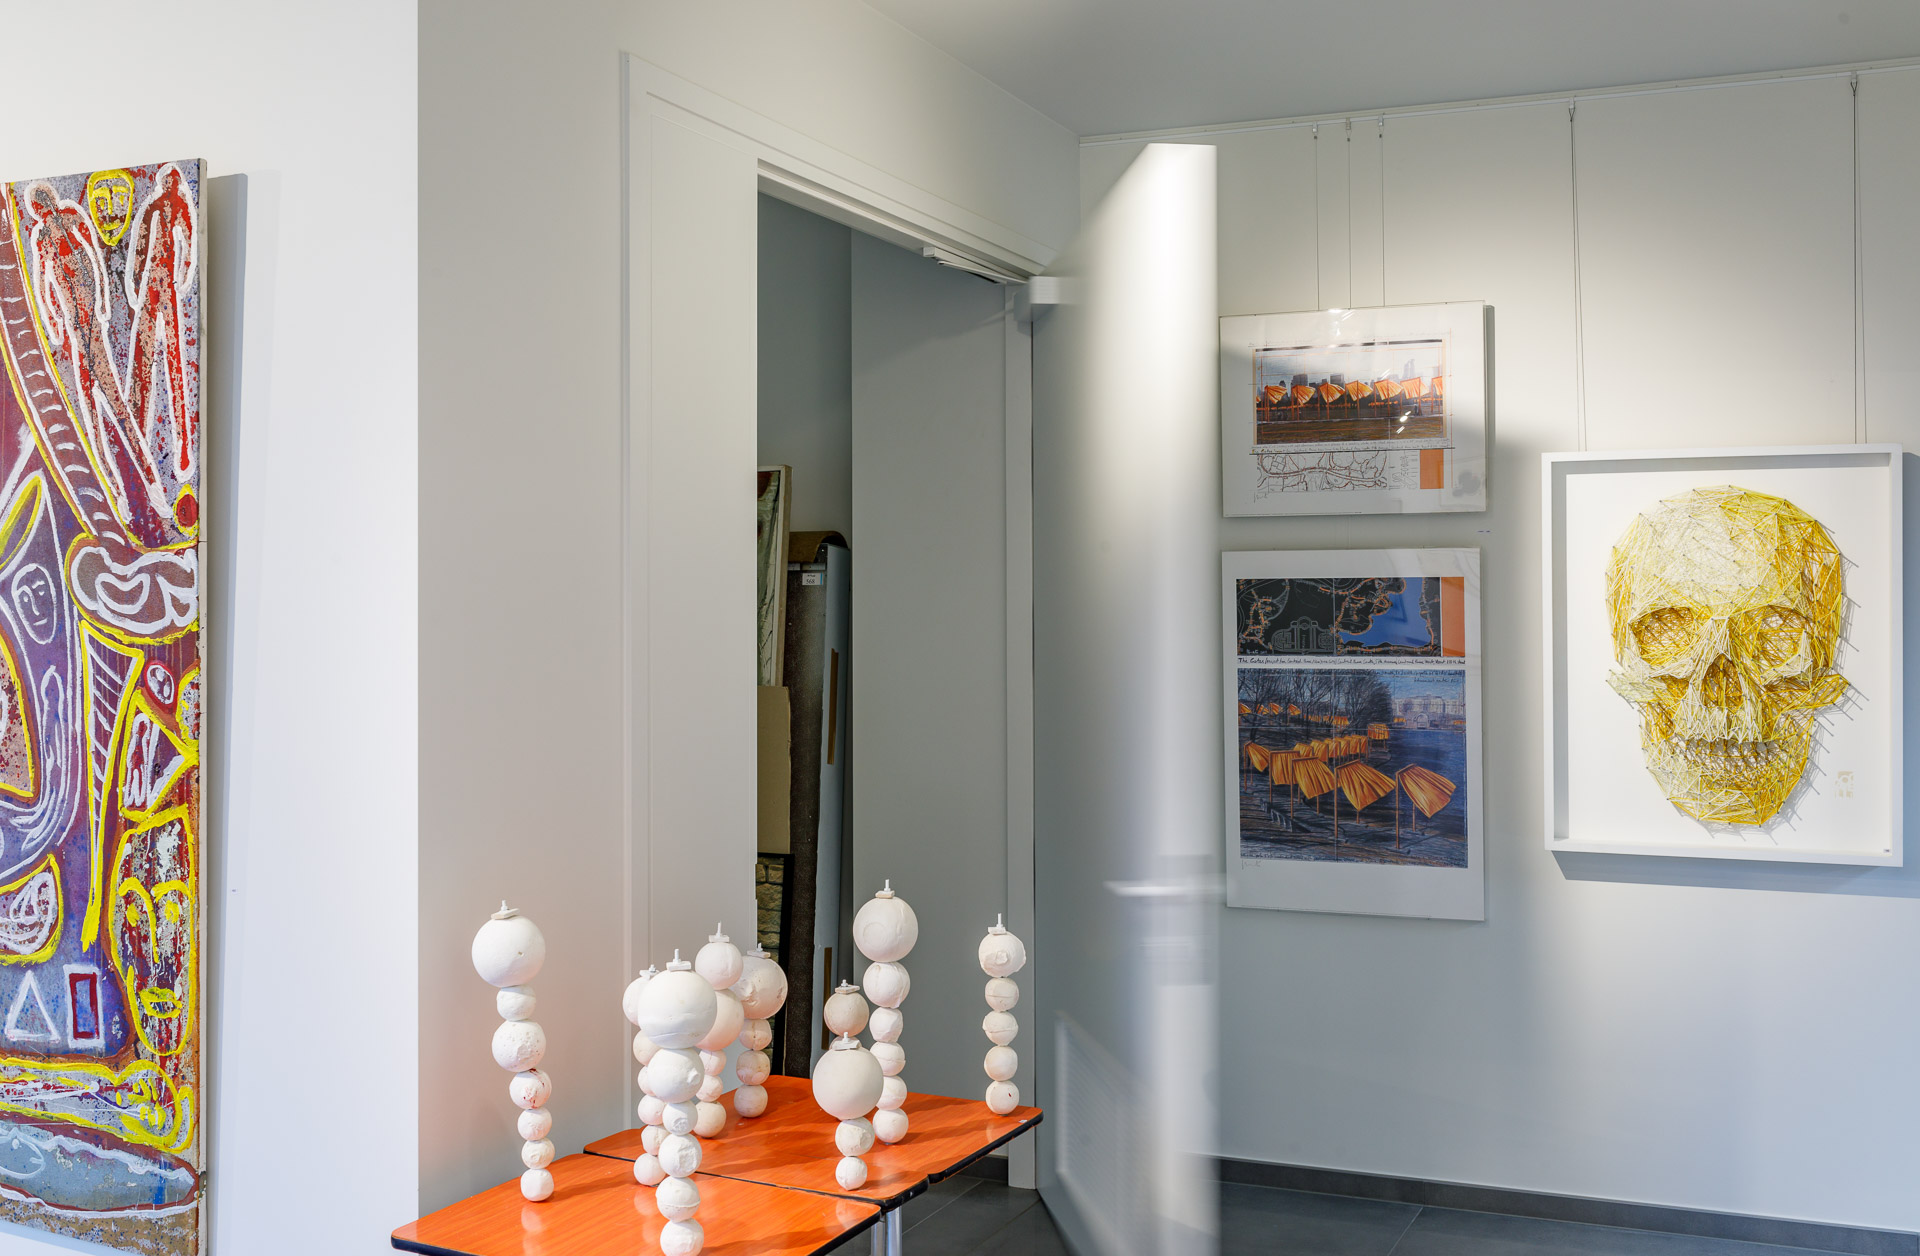 Woodoffice's magazijndeur in kunstgalerij De Vuyst met wit deurbeslag staat open.